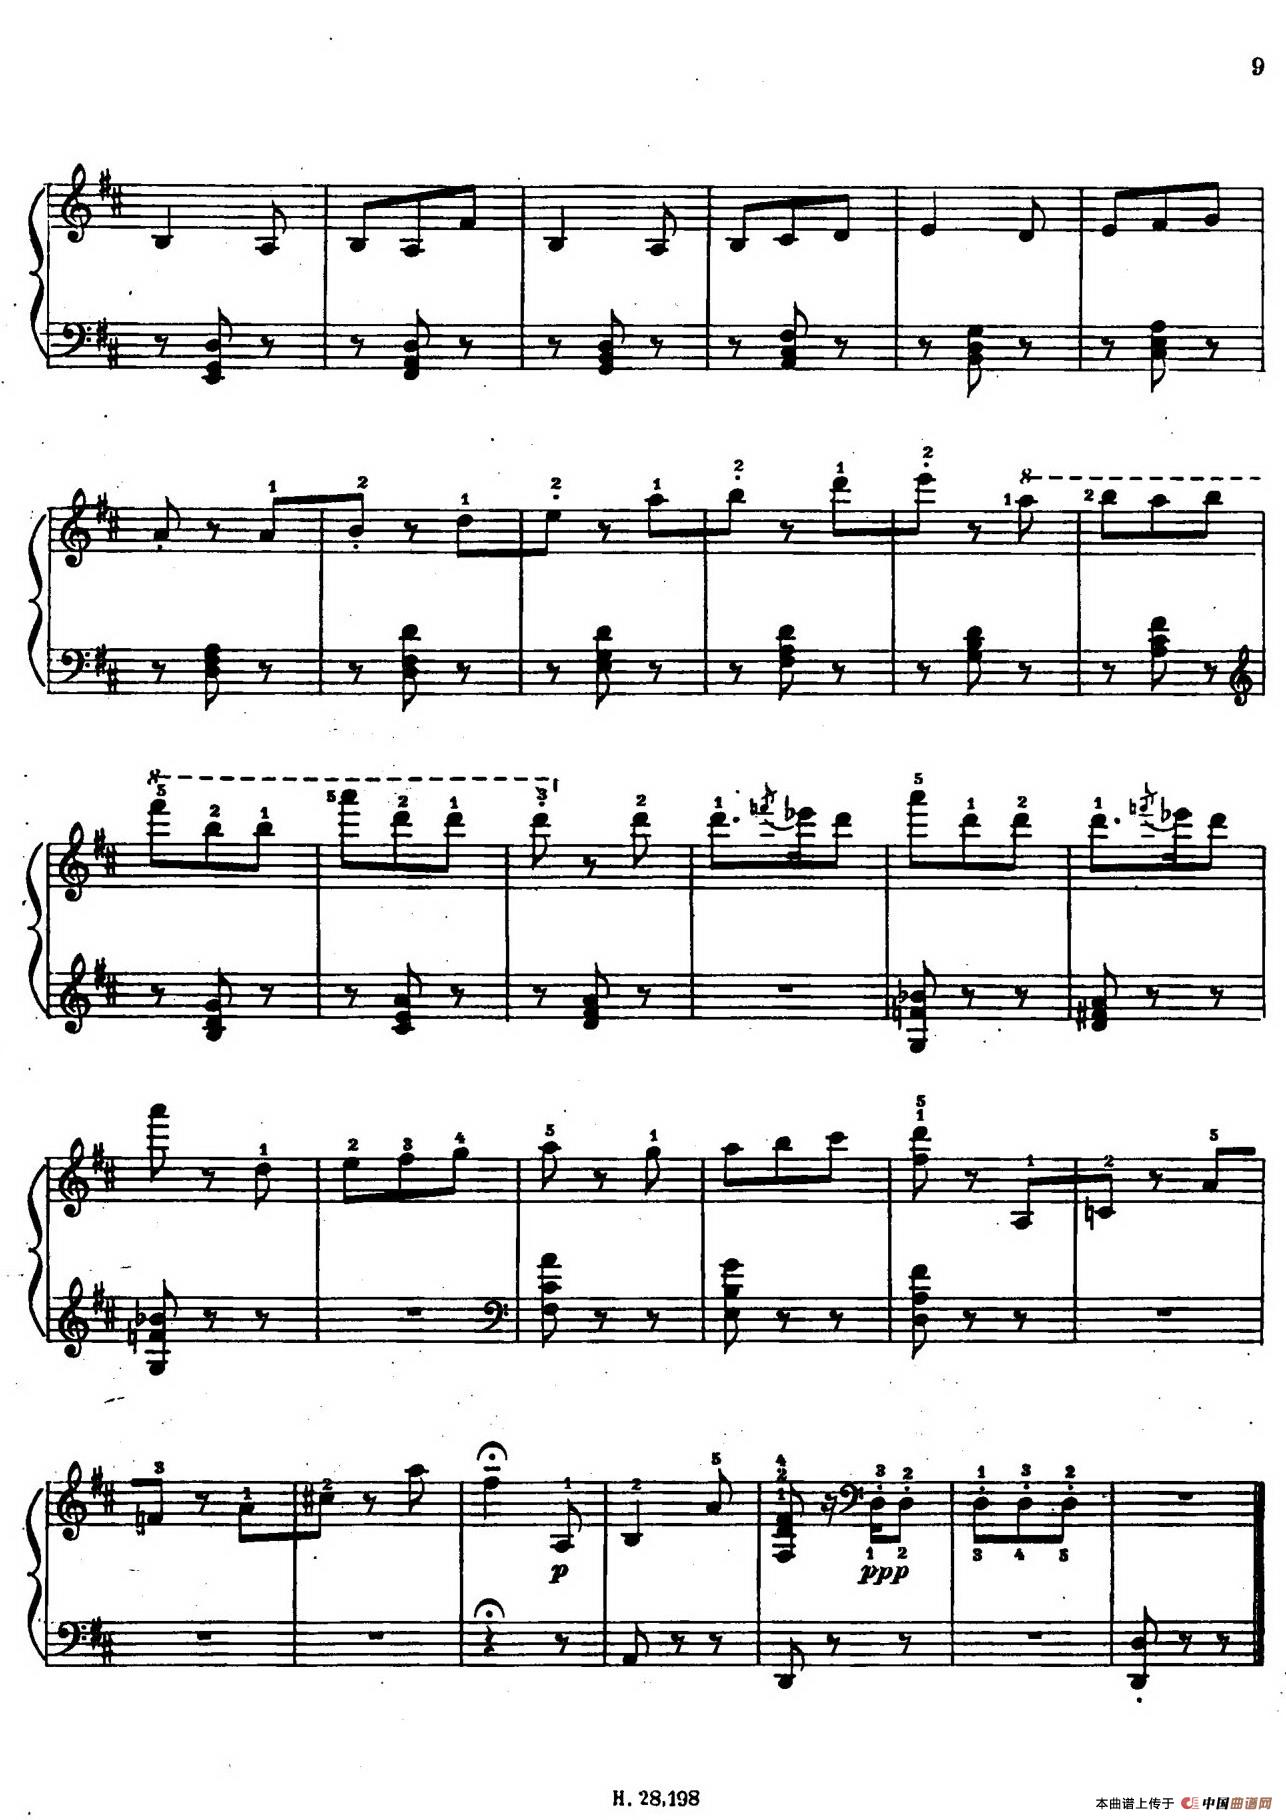 Tcherepnin - 10 Bagatelles Op.5（齐尔品-10首小品·3）(1)_008.jpg